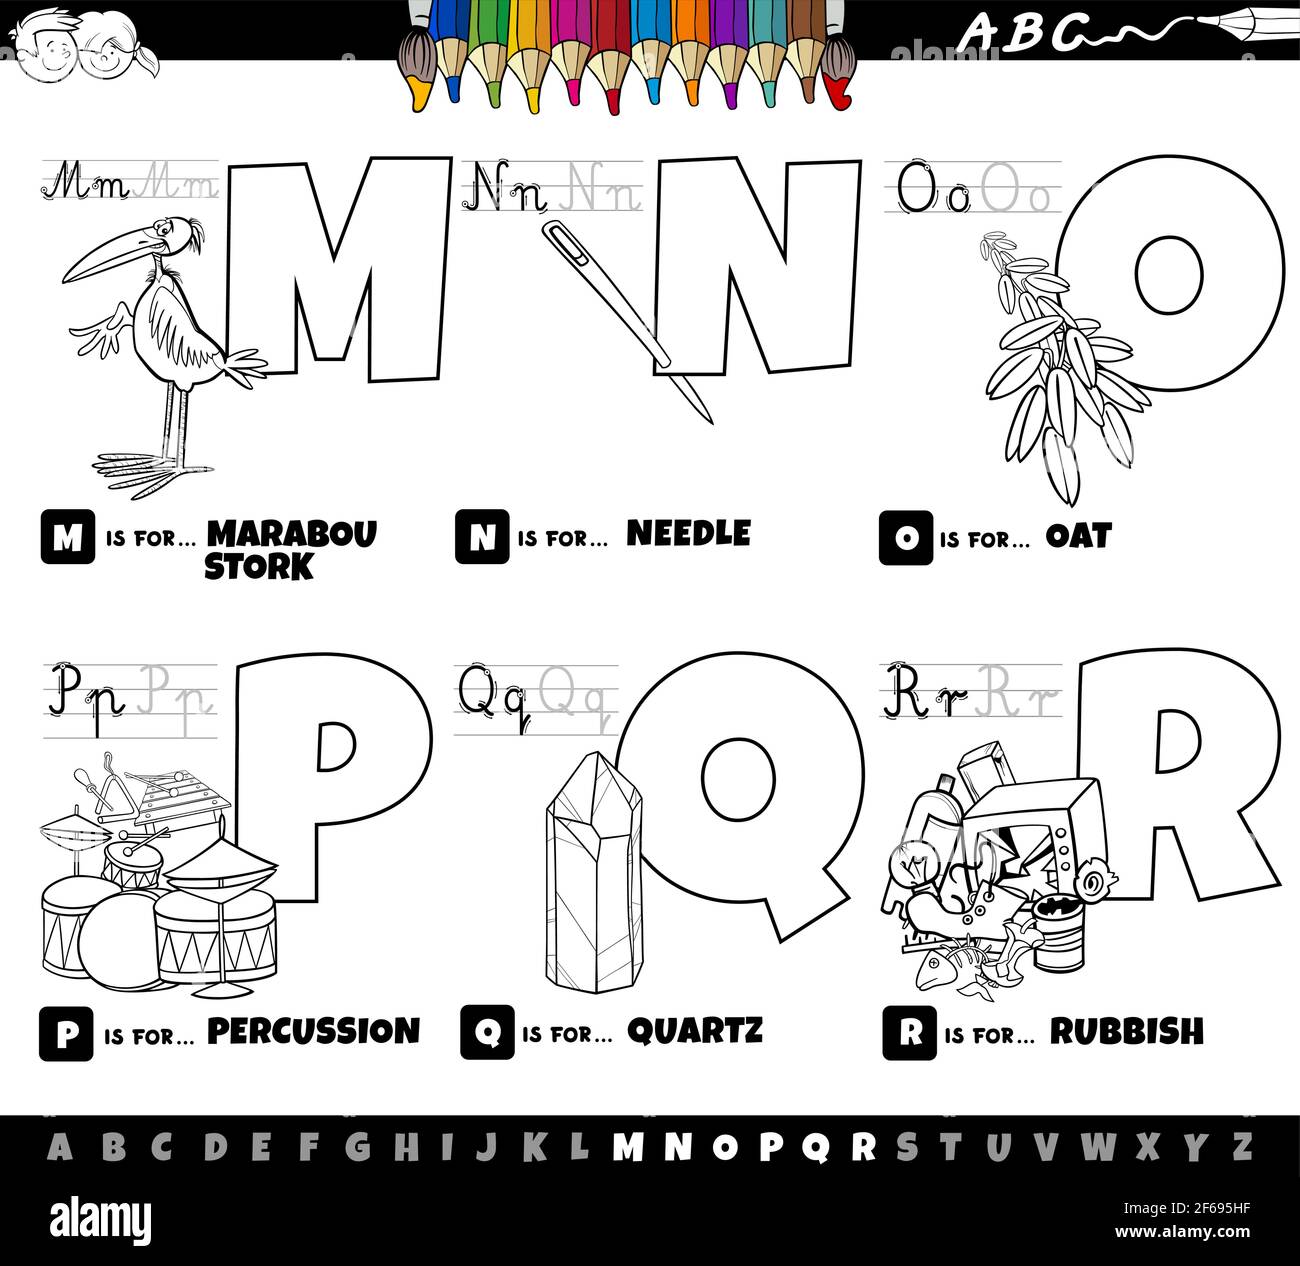 Cartoni animati in bianco e nero illustrazione delle lettere maiuscole dell' alfabeto set didattico per la pratica di lettura e scrittura per bambini da  Colori da M a R Immagine e Vettoriale 